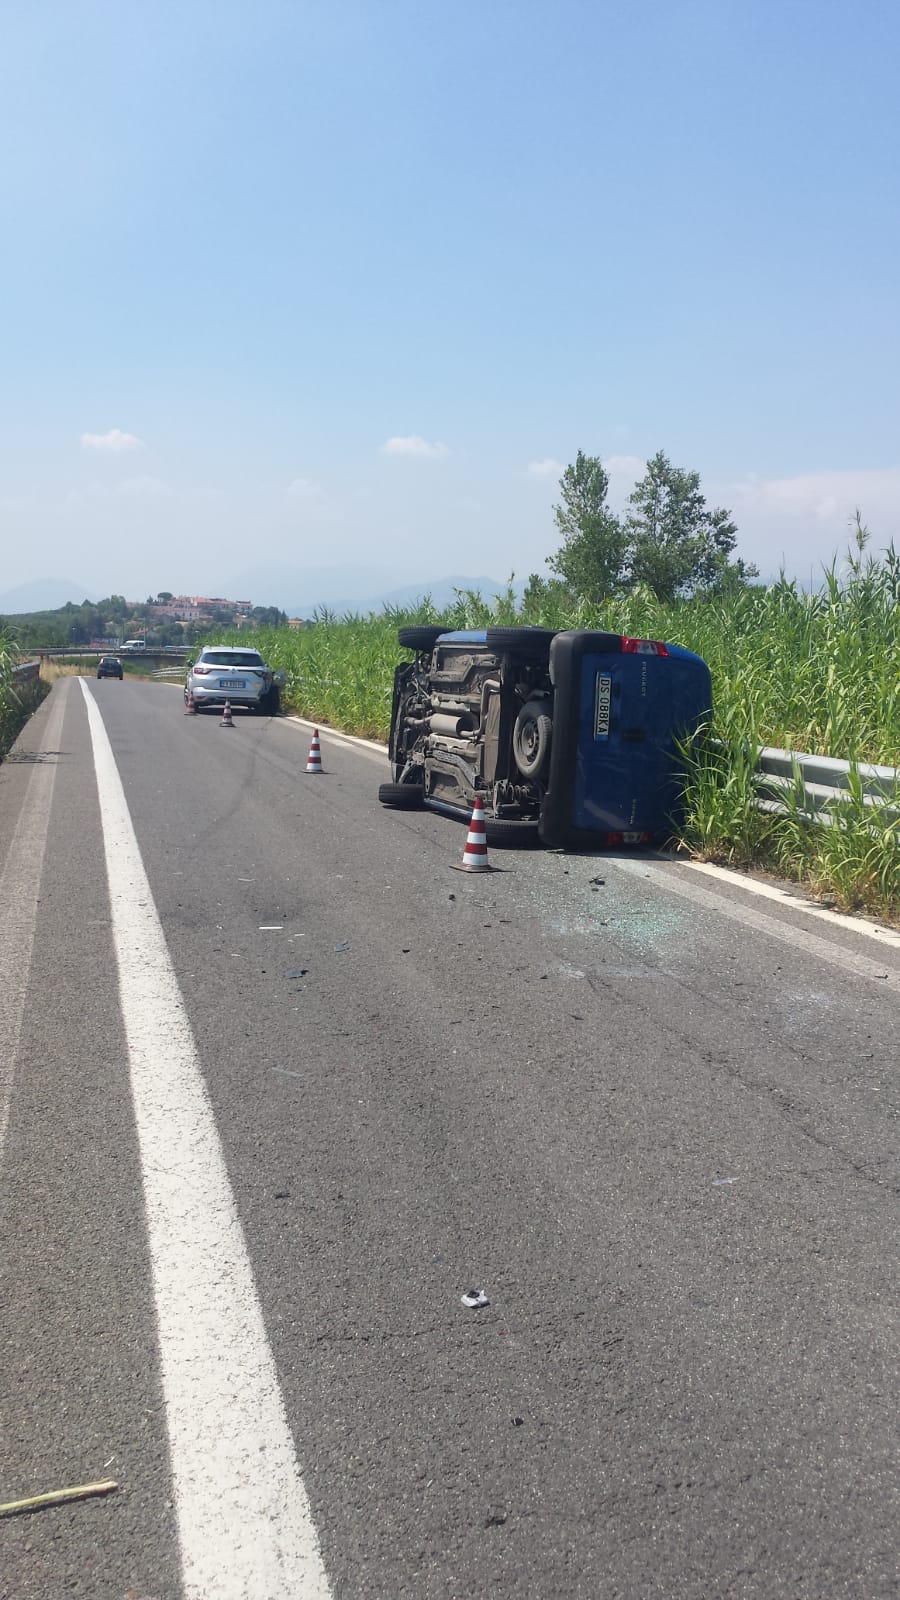 Benevento| Impatto furgone e auto, un ferito